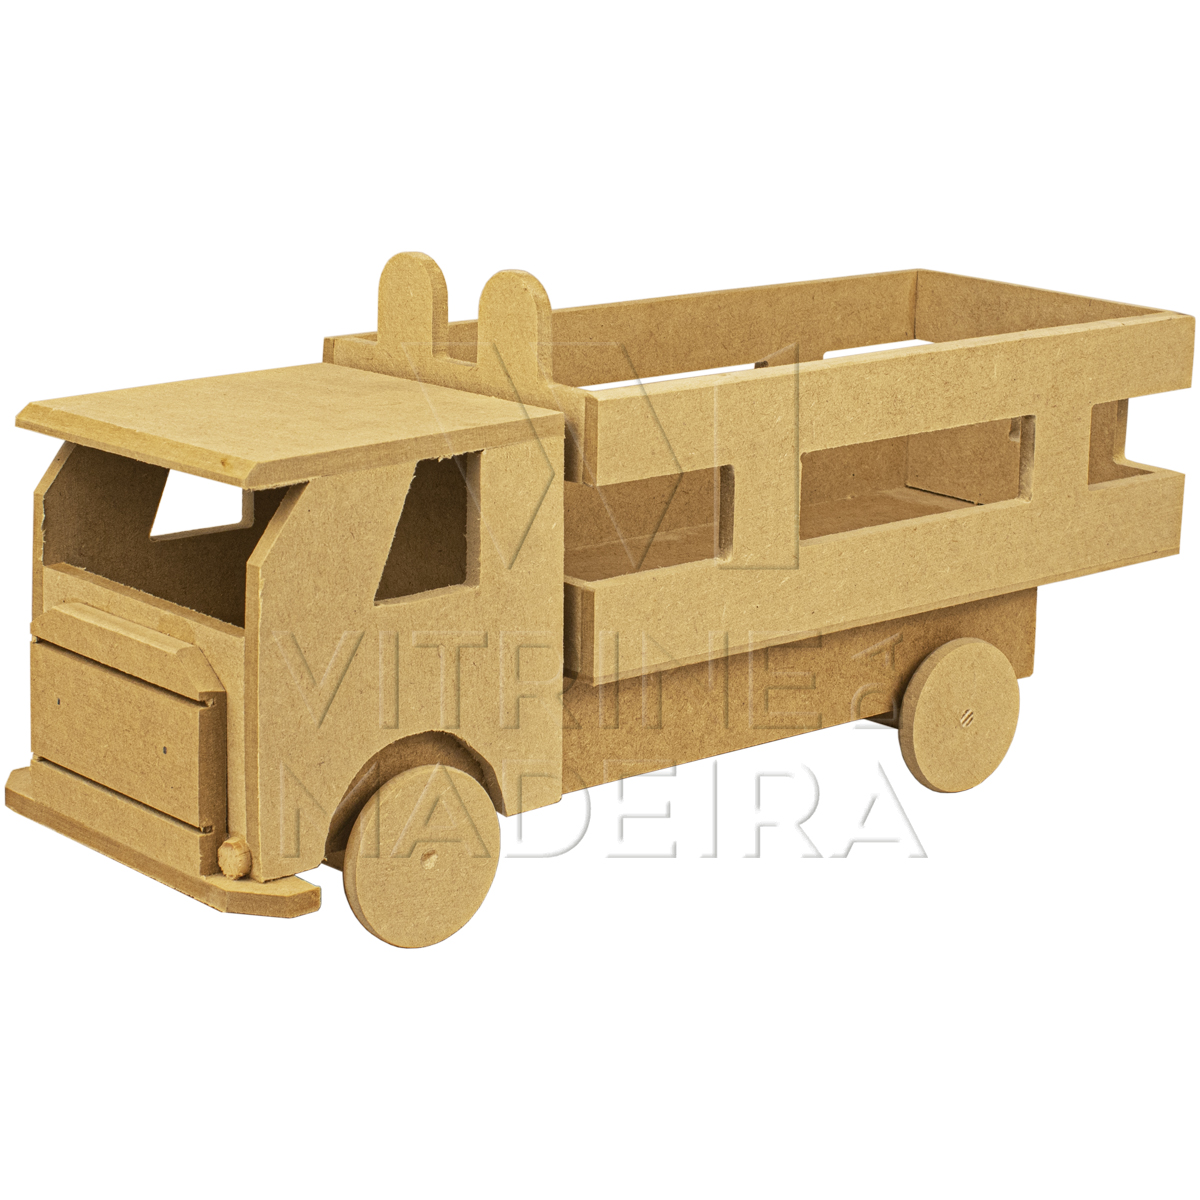 Como fazer brinquedos de madeira 5  Caminhões de brinquedo de madeira,  Caminhão de madeira, Brinquedos de madeira